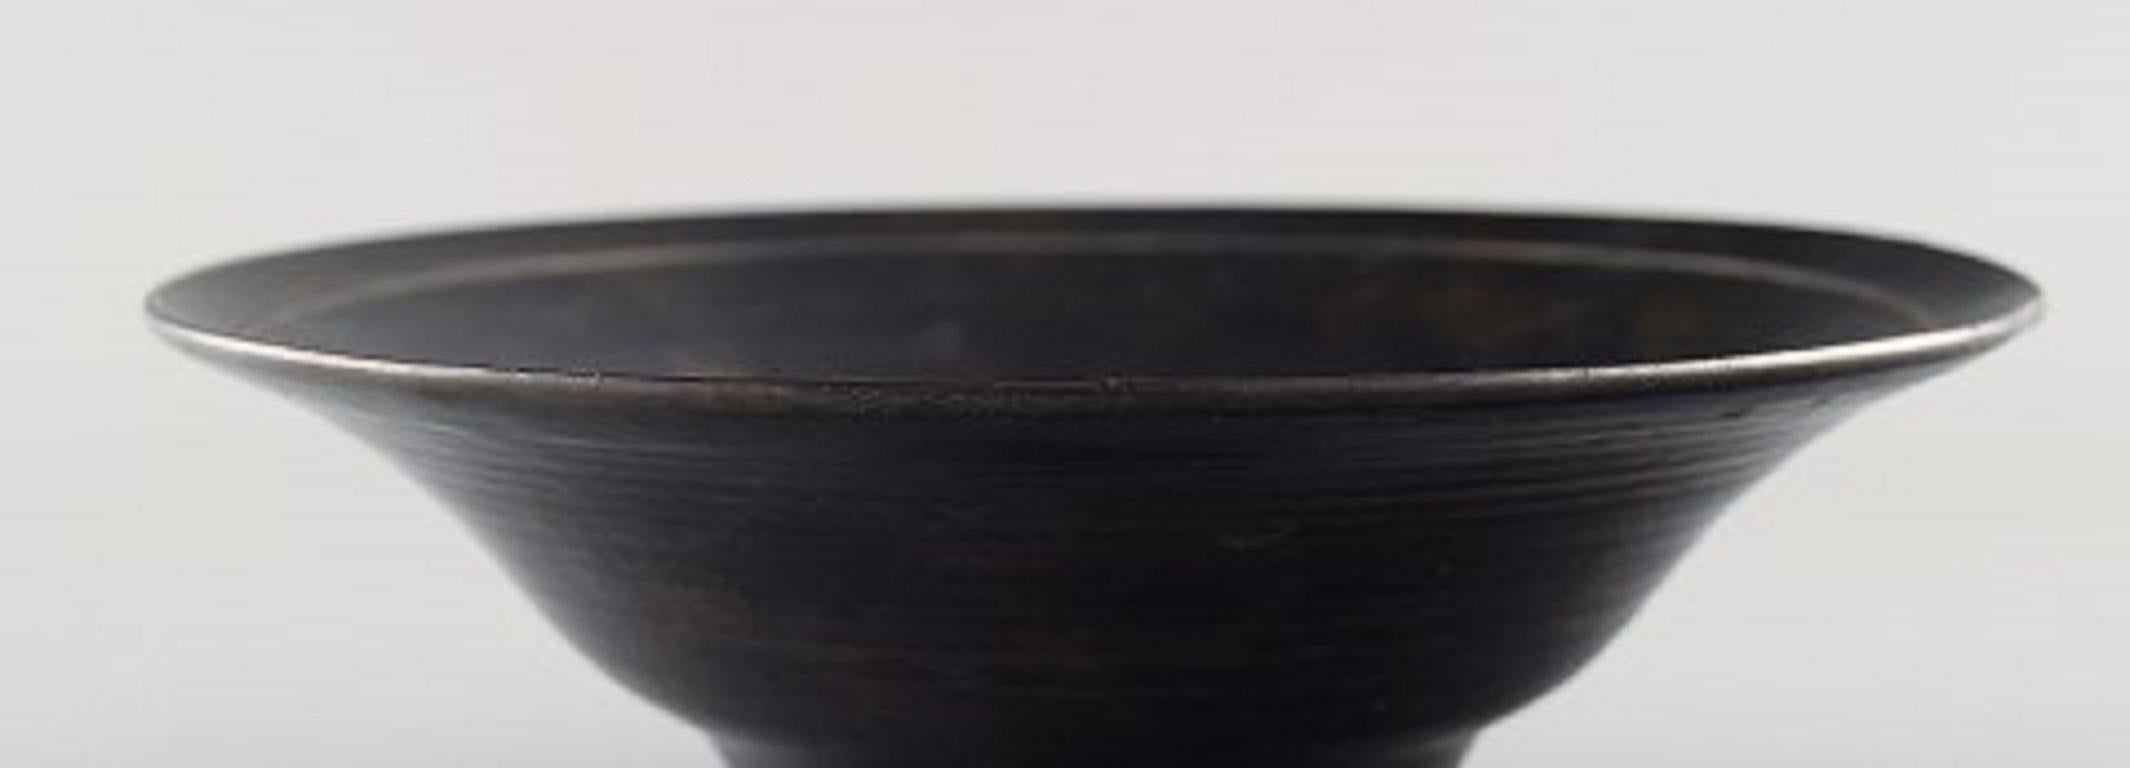 Lucie Rie Austrian-Born British Ceramist, Stylish Bowl, Black Glaze In Good Condition In Copenhagen, DK